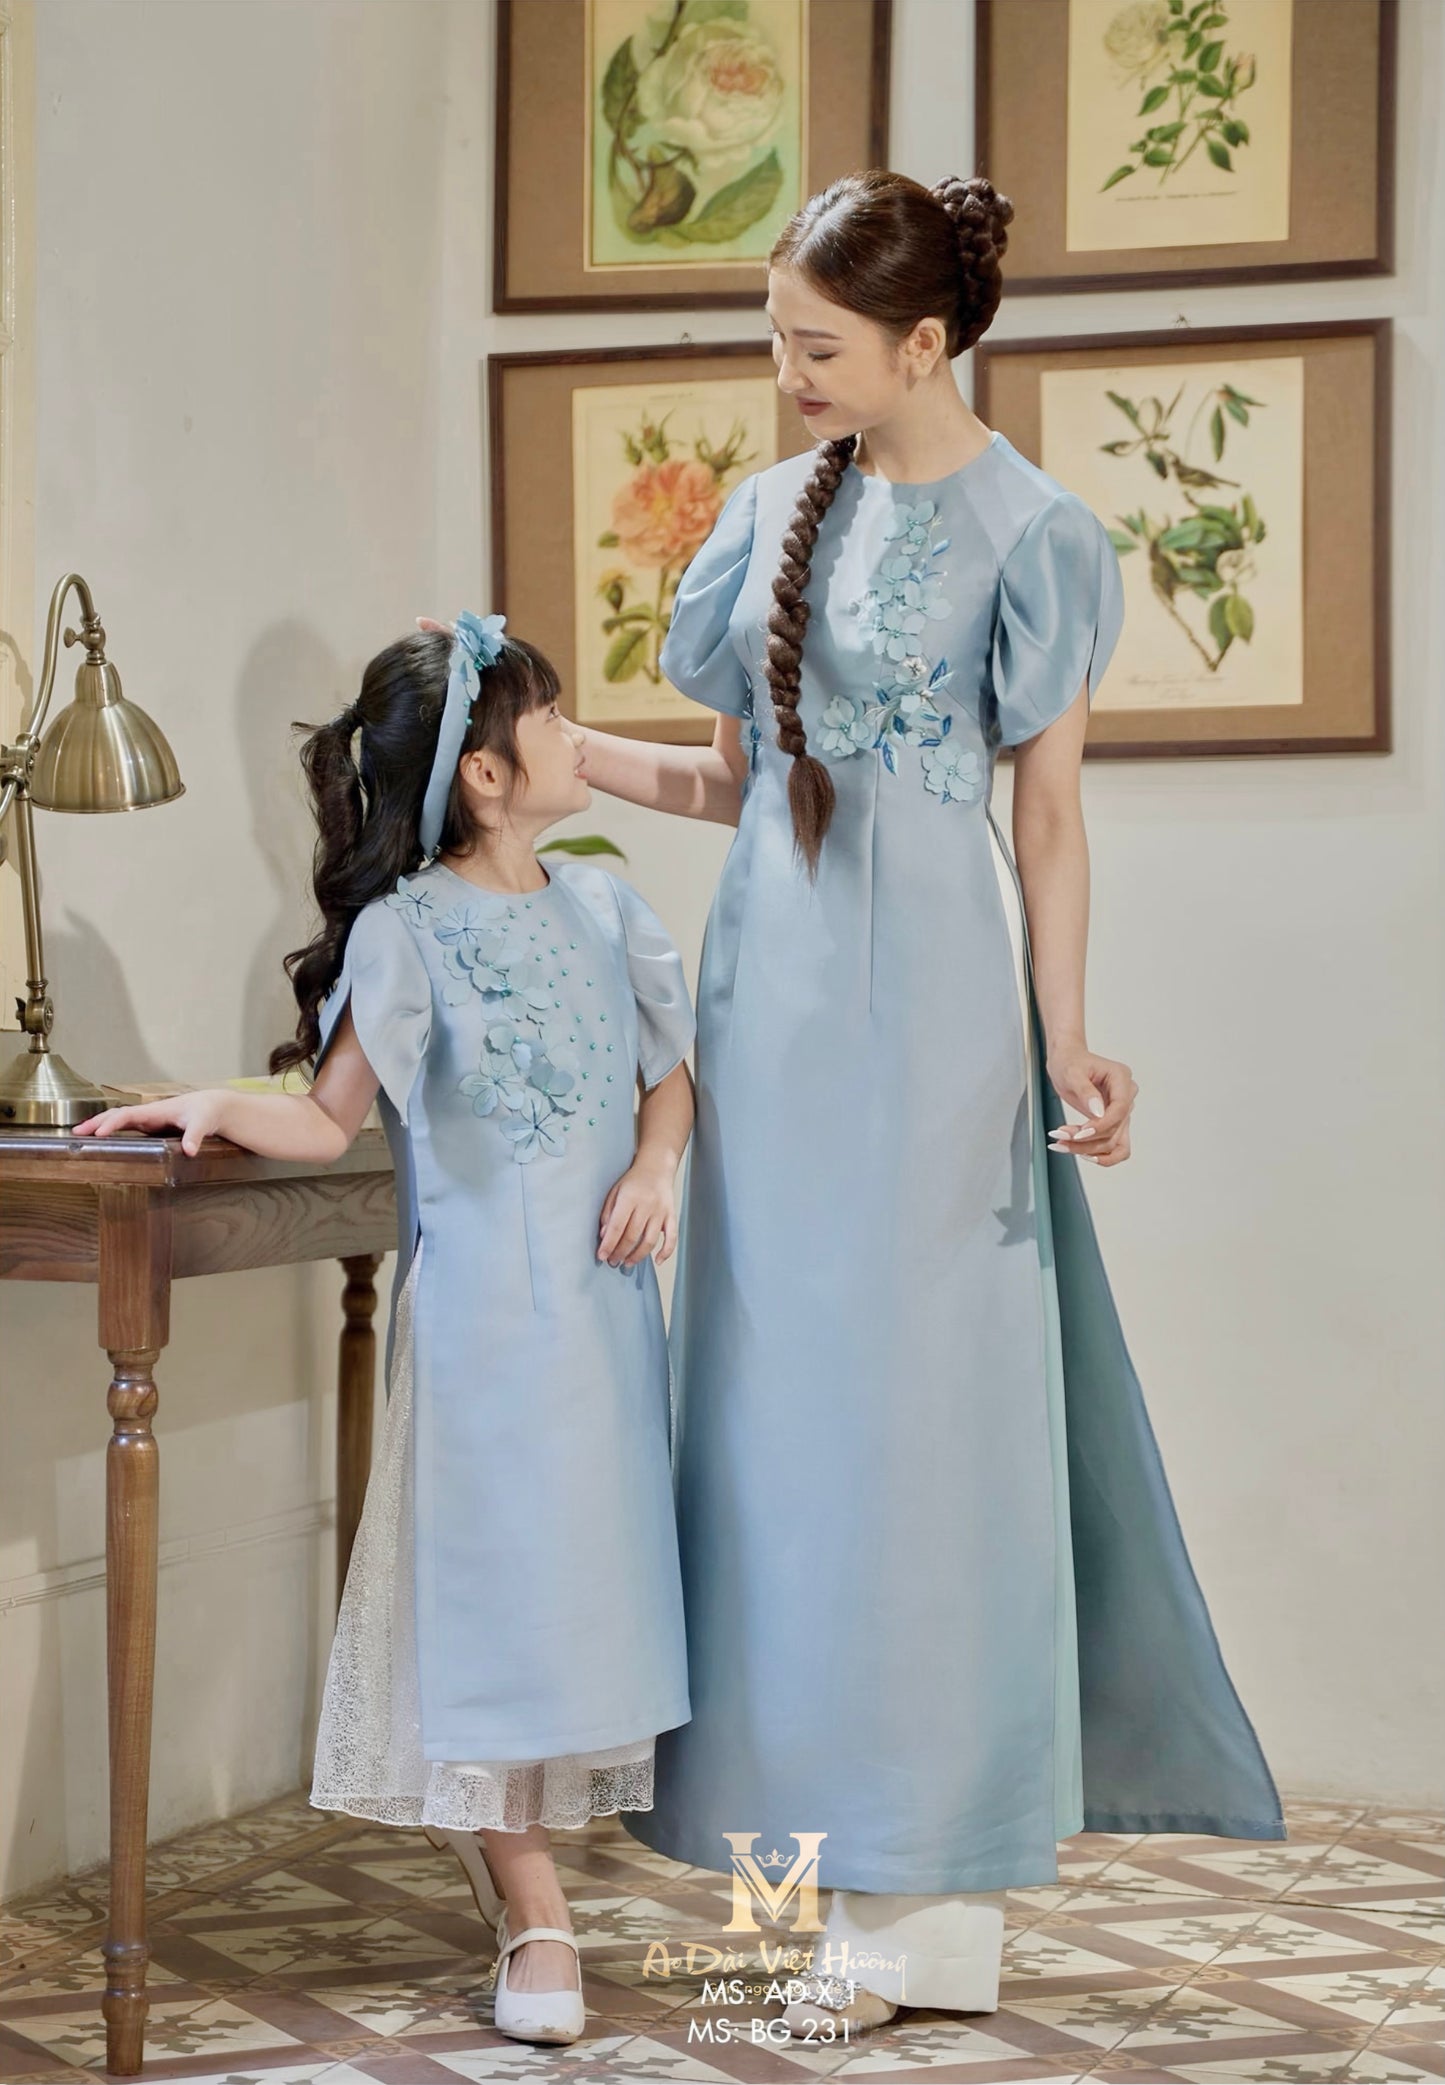 763 - Girl’s Áo Dài Thanh Vân Light Blue - kèm váy (Family Ao Dai). Final sale (no return/exchange)